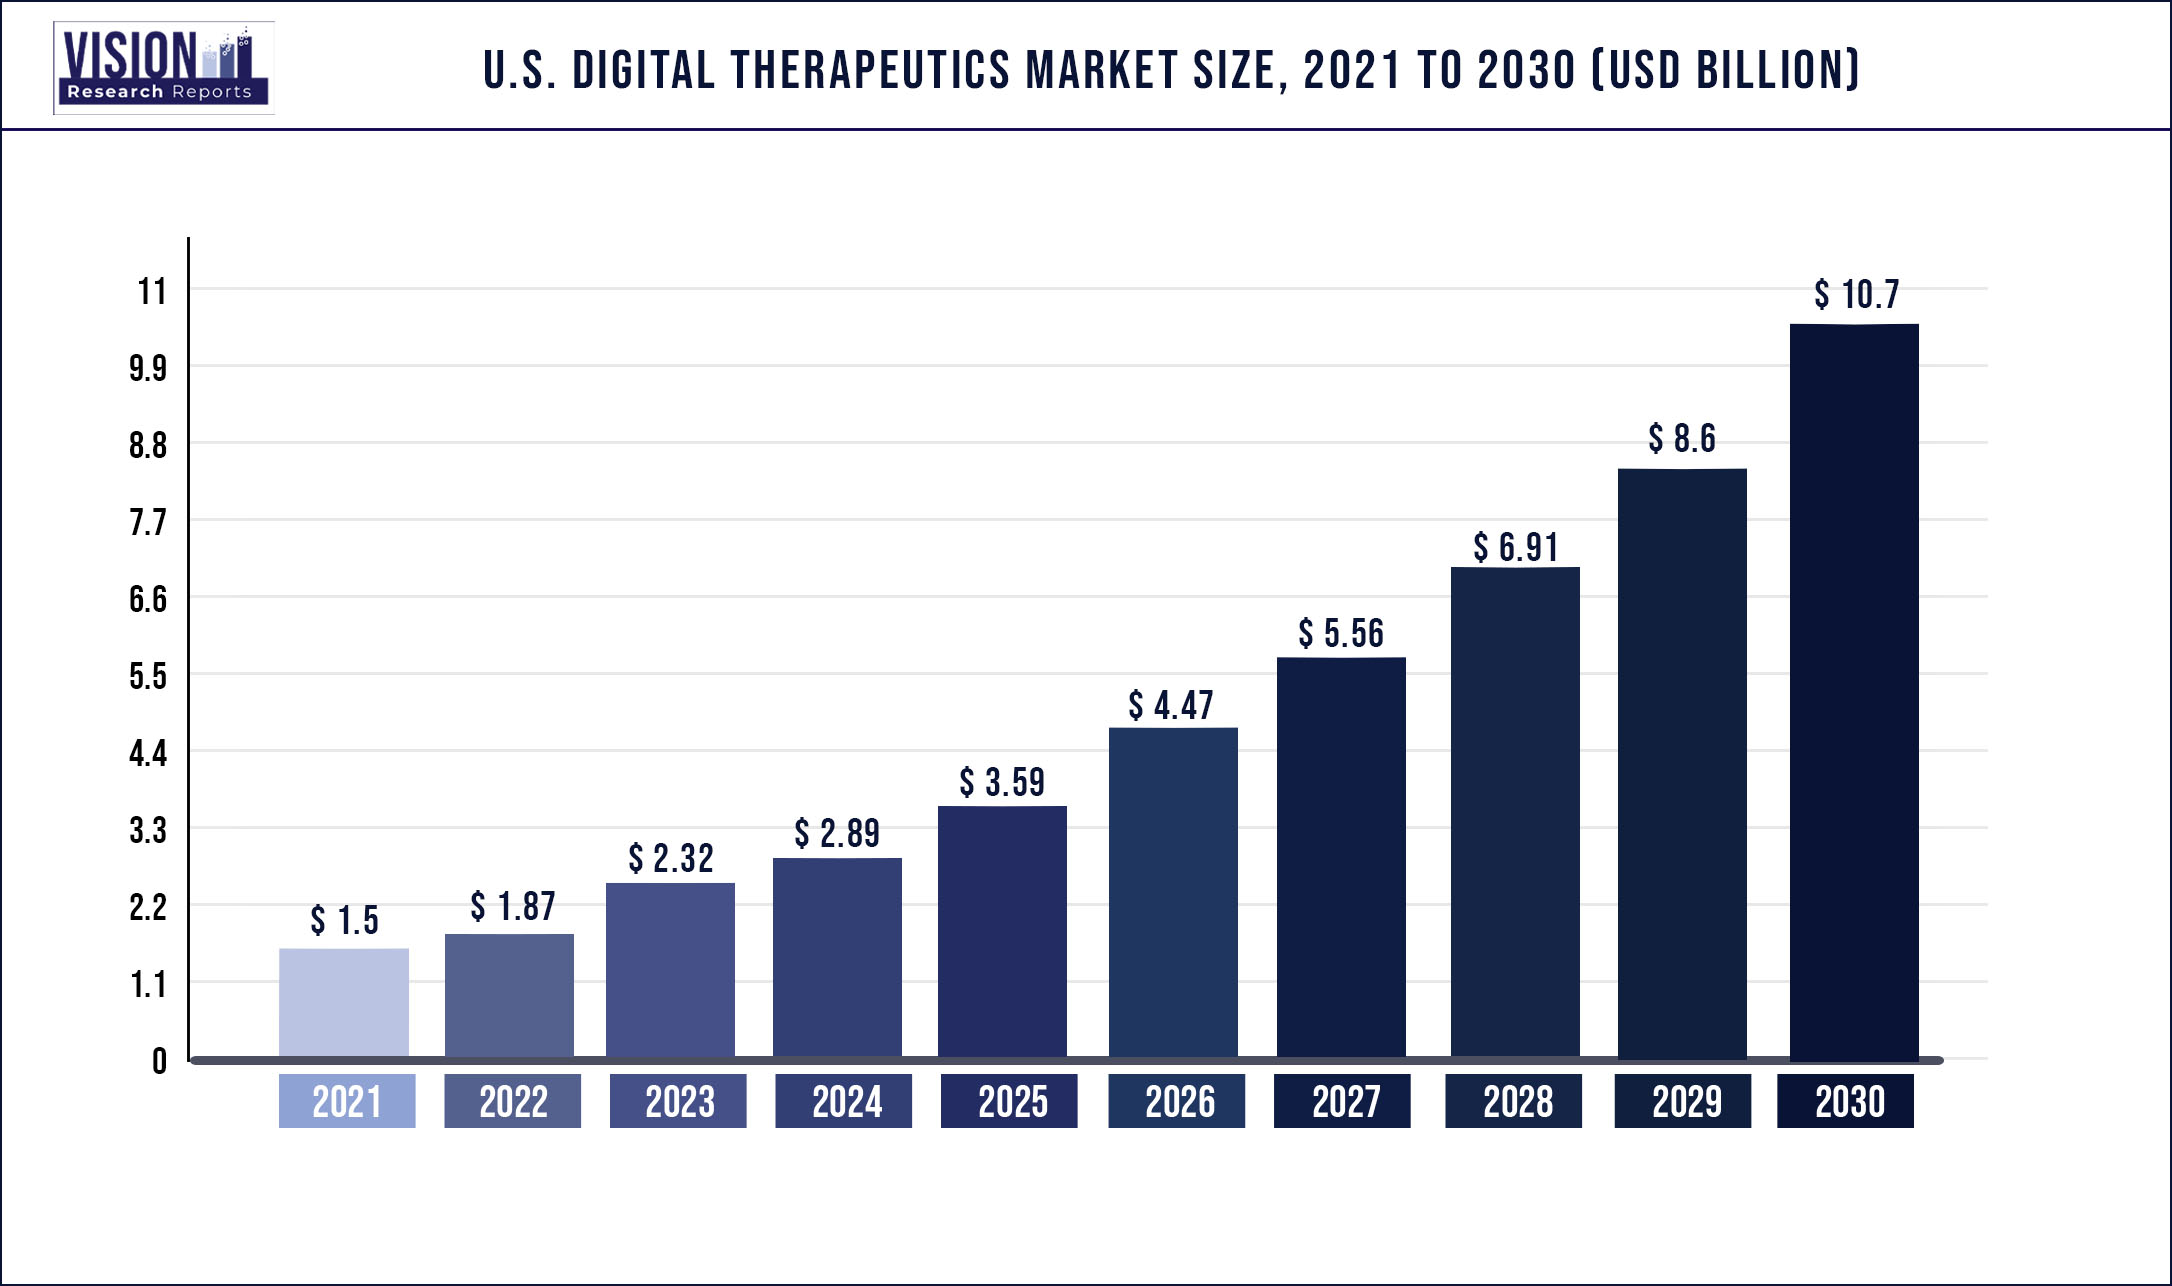 U.S. Digital Therapeutics Market Size 2021 to 2030